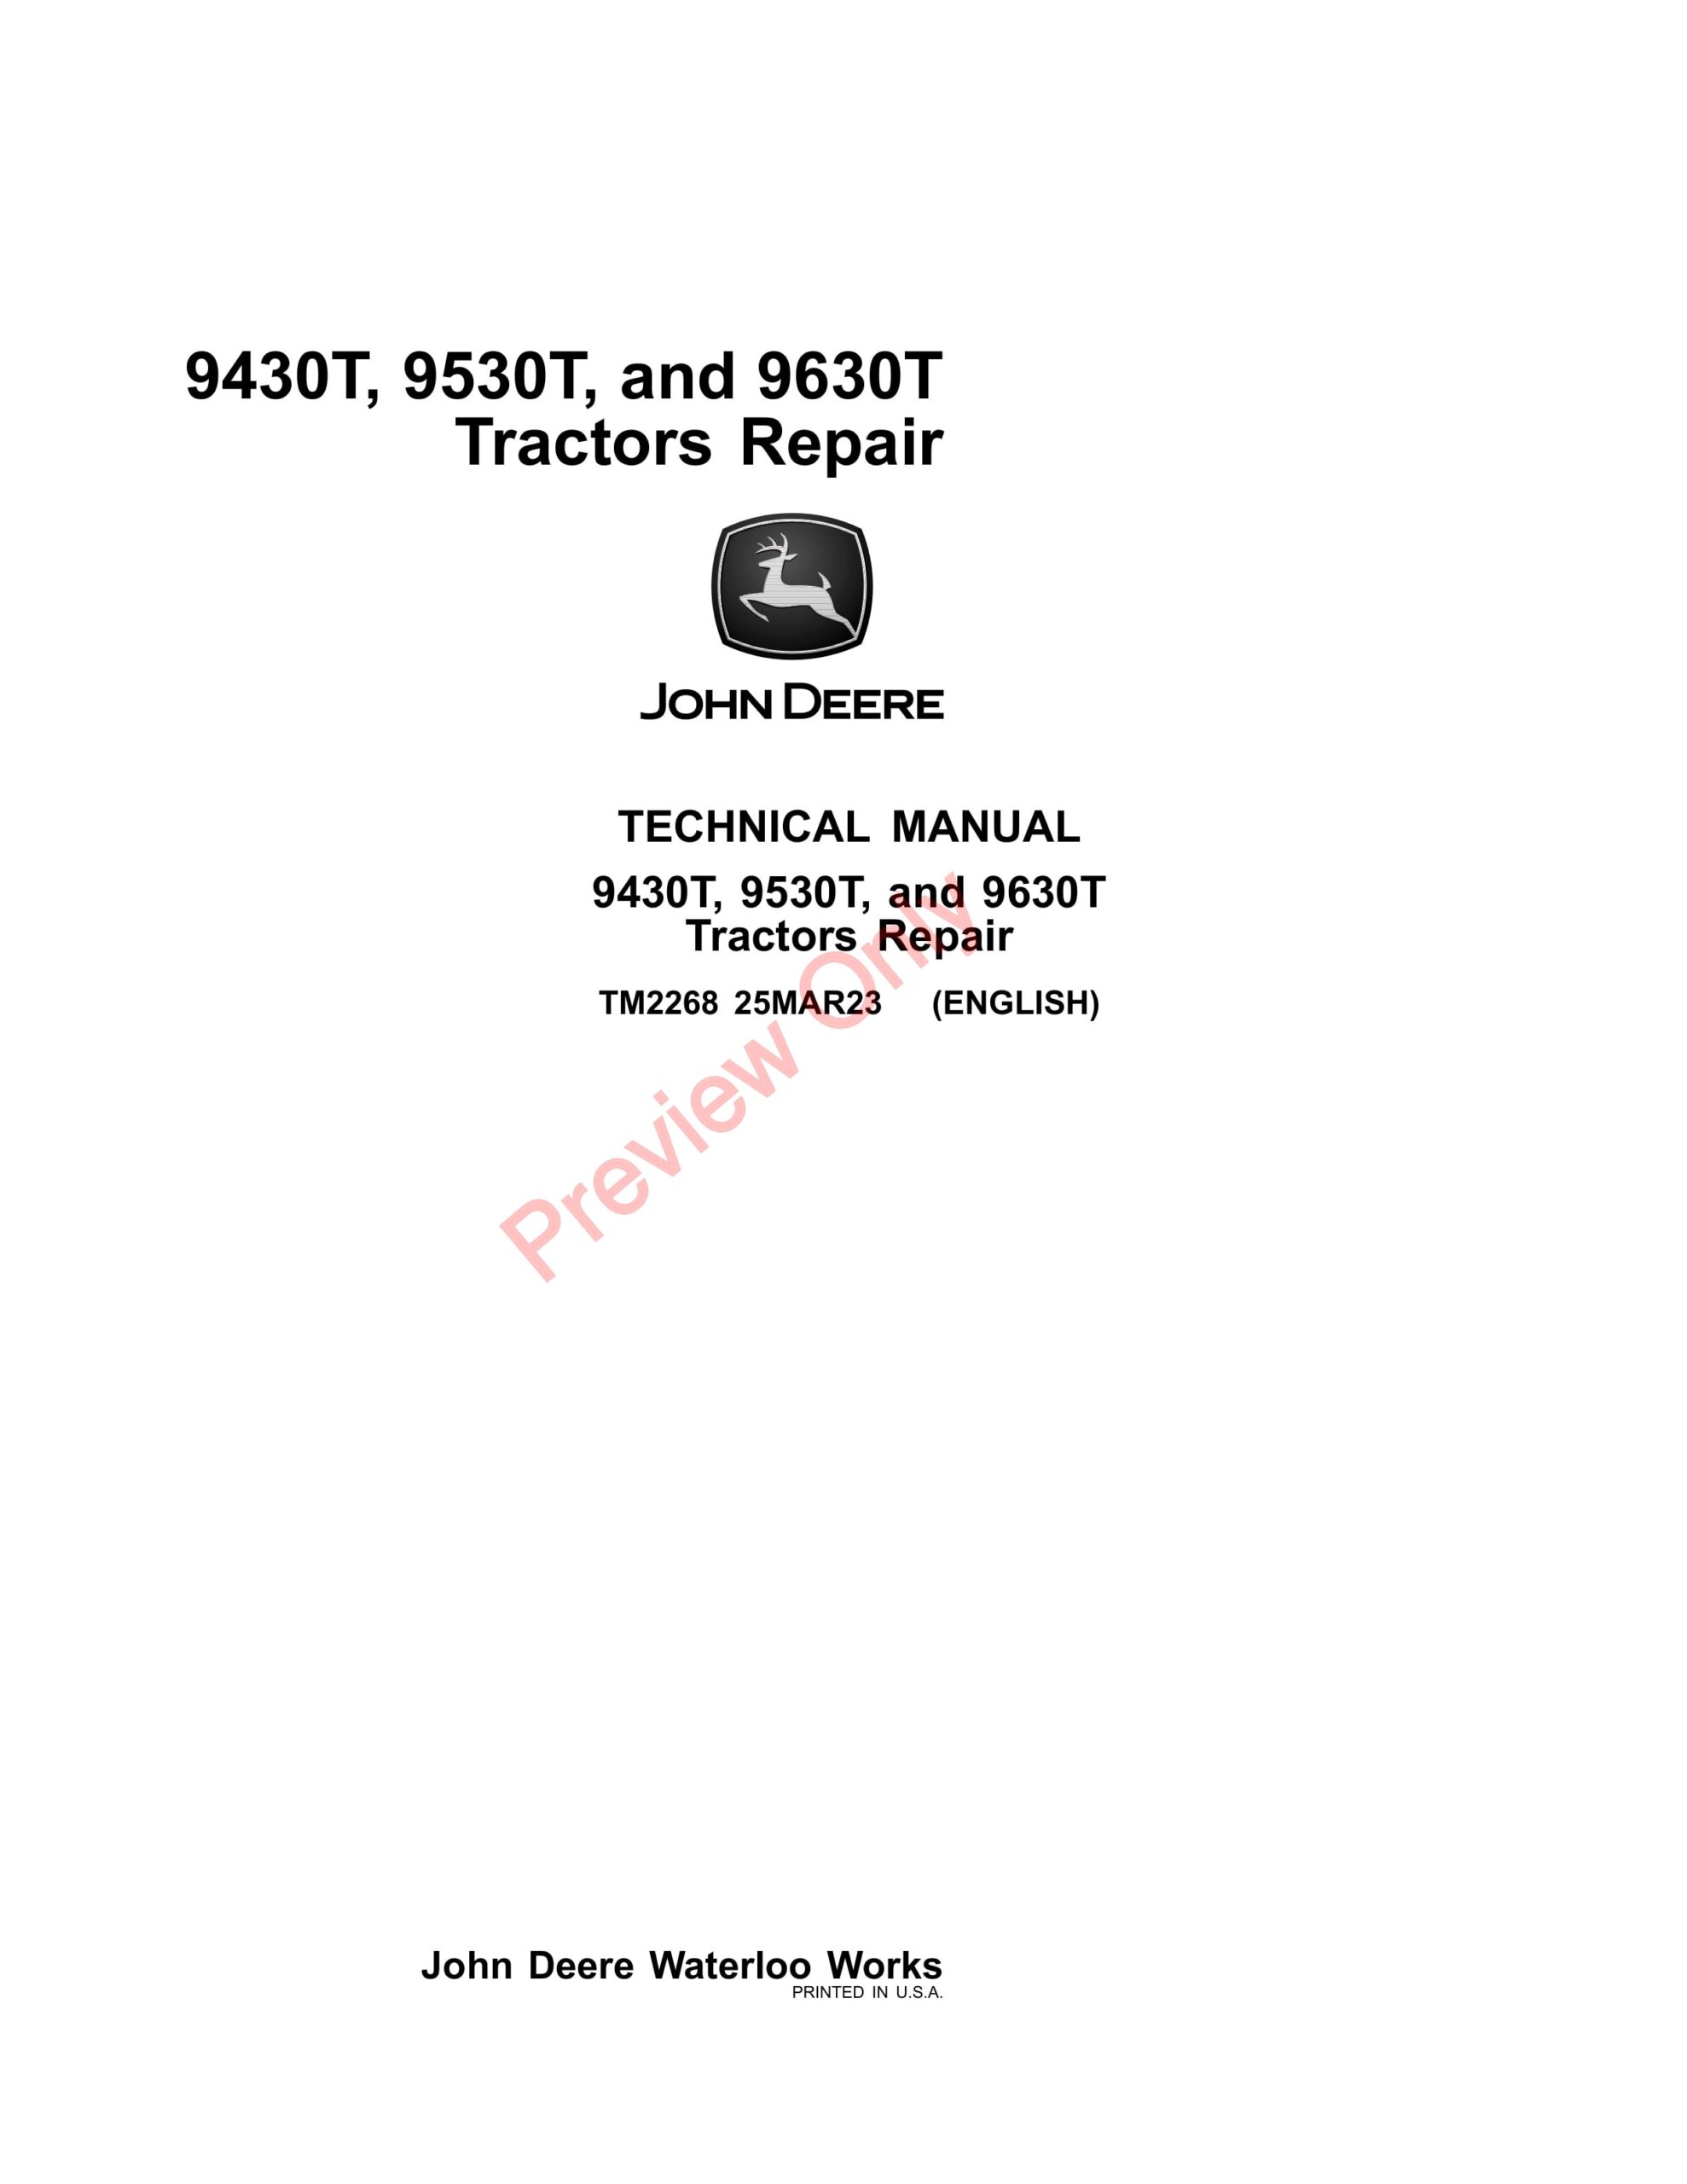 John Deere 9430T, 9530T, and 9630T Tractors Technical Manual TM2268 25MAR23-1